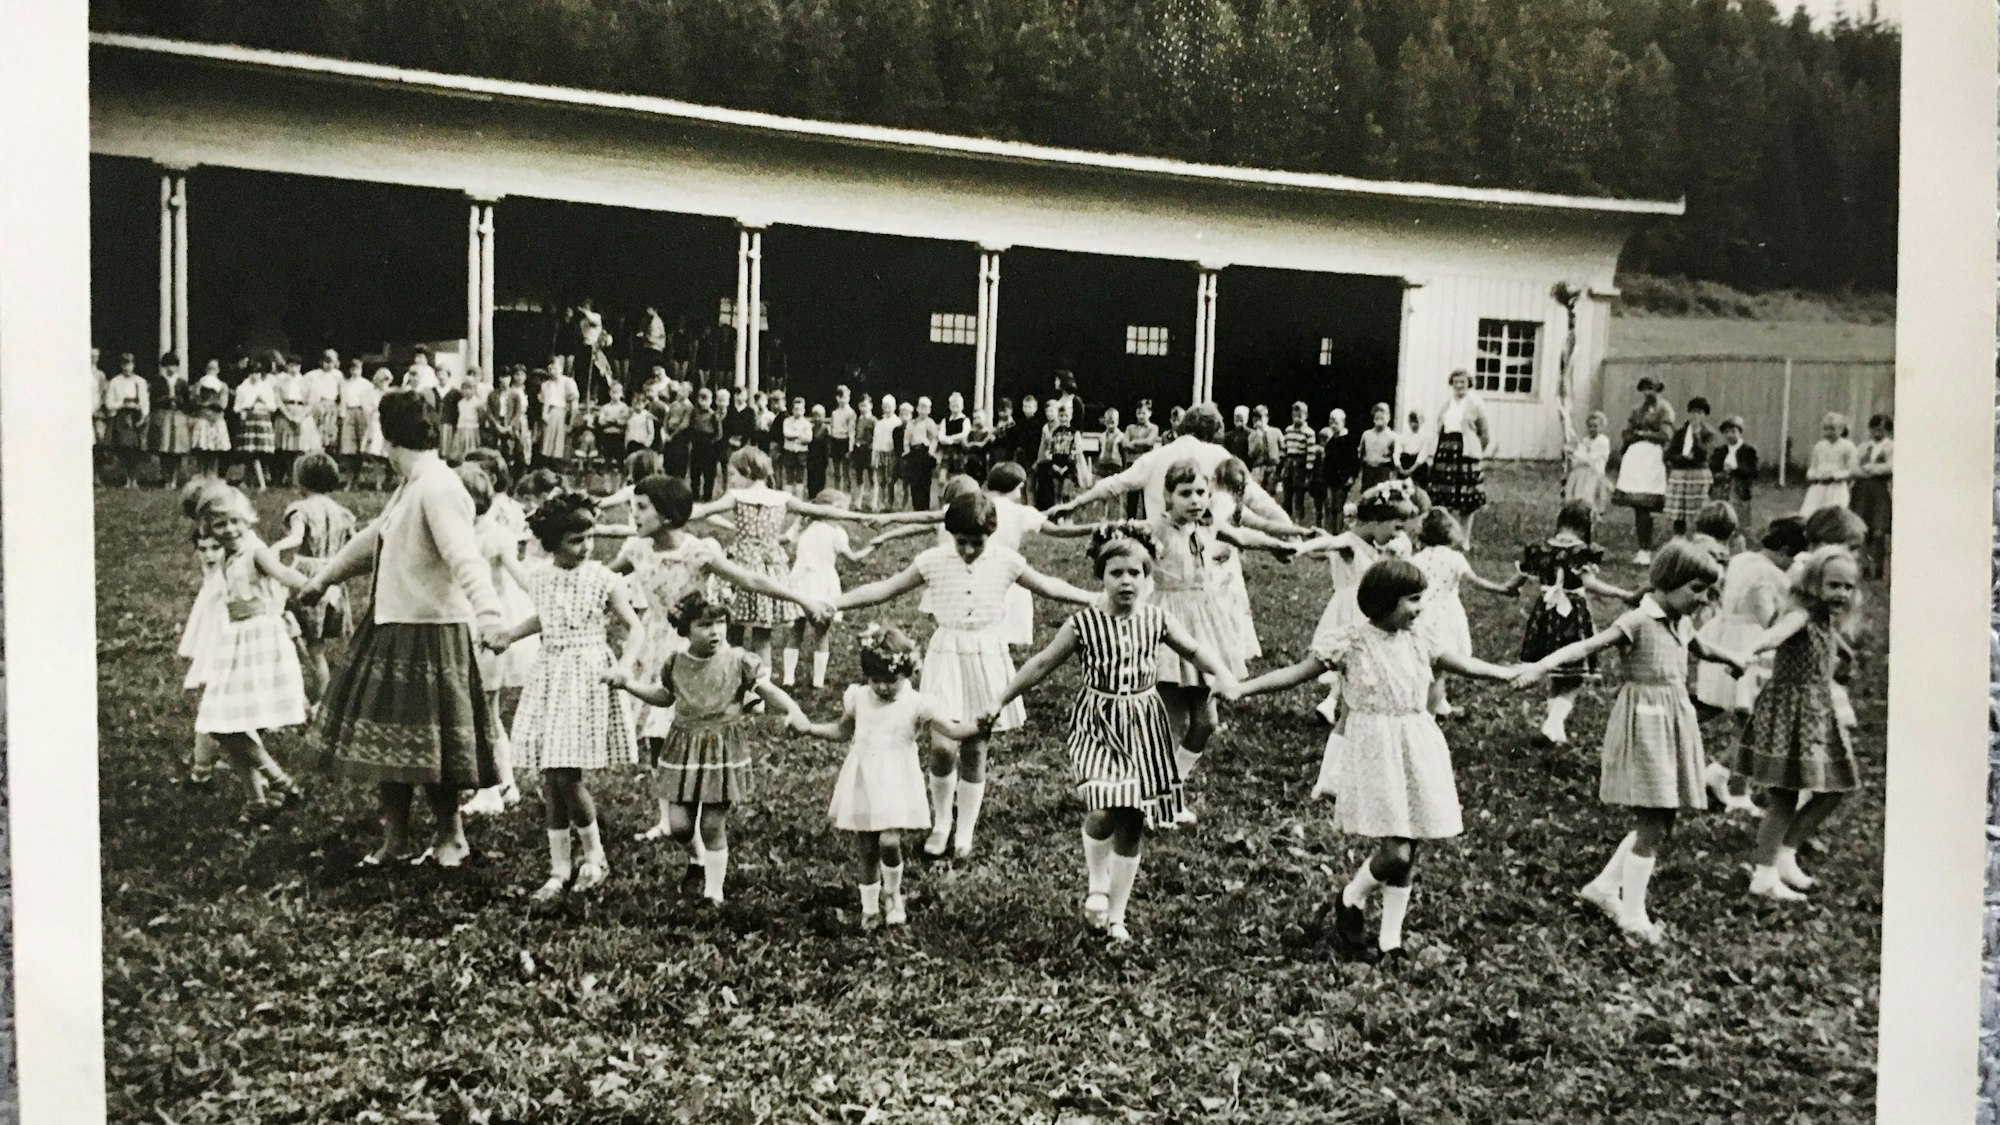 Das undatierte Handout zeigt Kinder beim Tanzen in einem Kurheim in Bad Dürrheim im Jahr 1959.